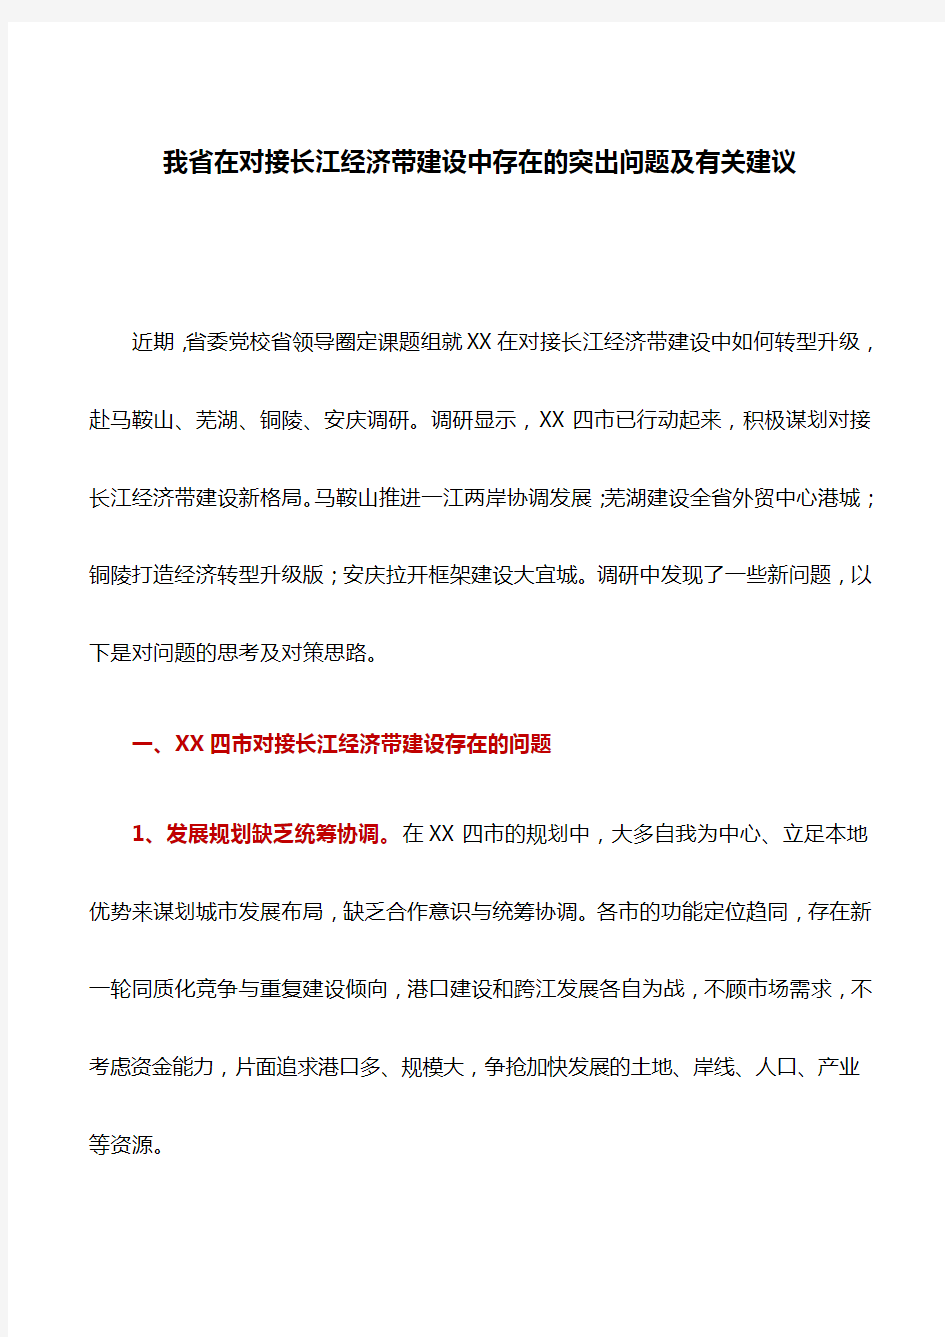 调研报告：我省在对接长江经济带建设中存在的突出问题及有关建议